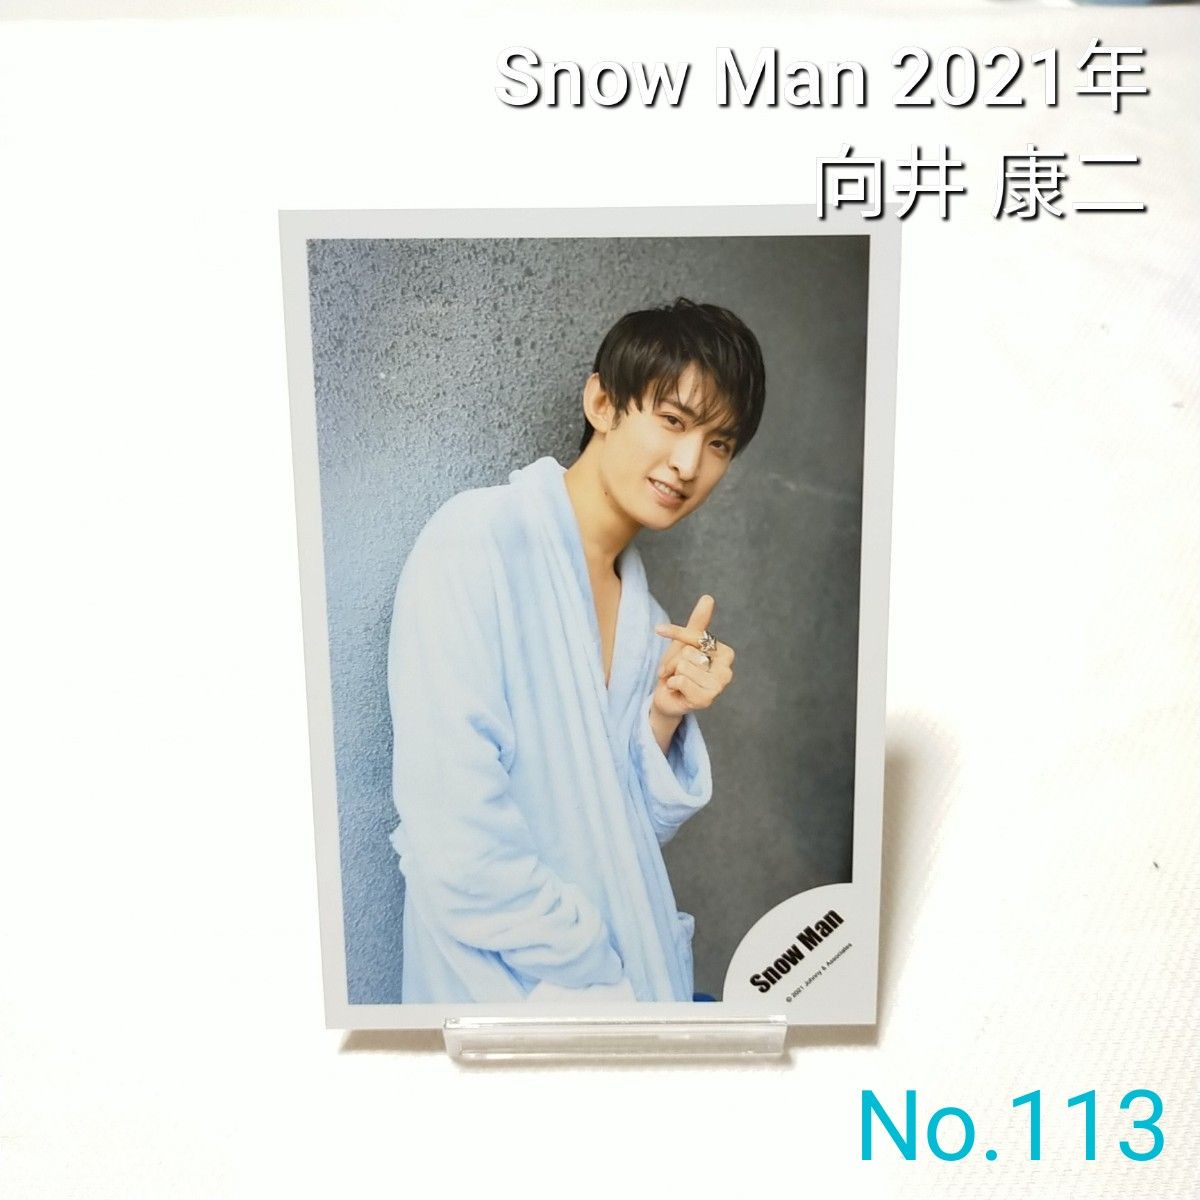 113 Snow Man 向井康二 公式写真 スノーマン 2021年